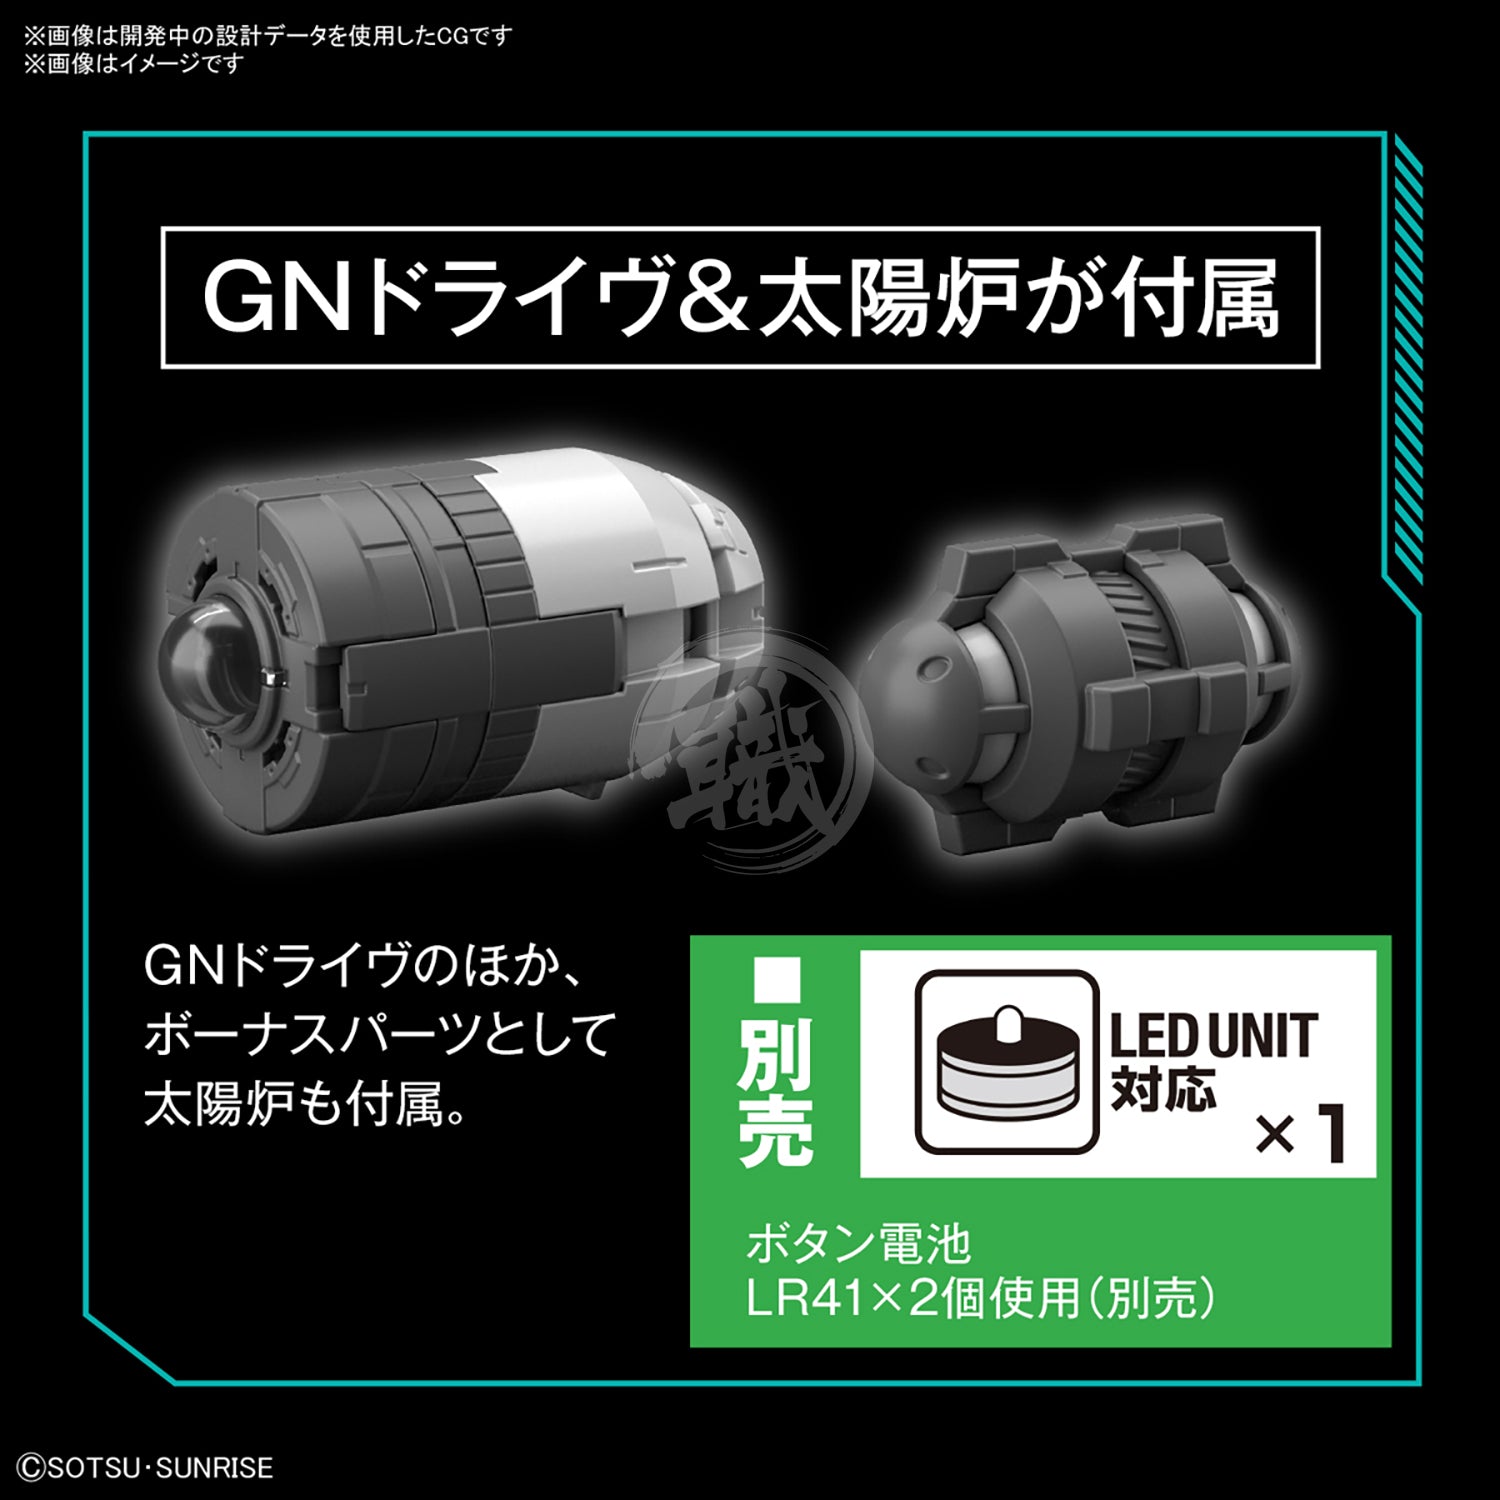 MG Gundam Virtue - ShokuninGunpla